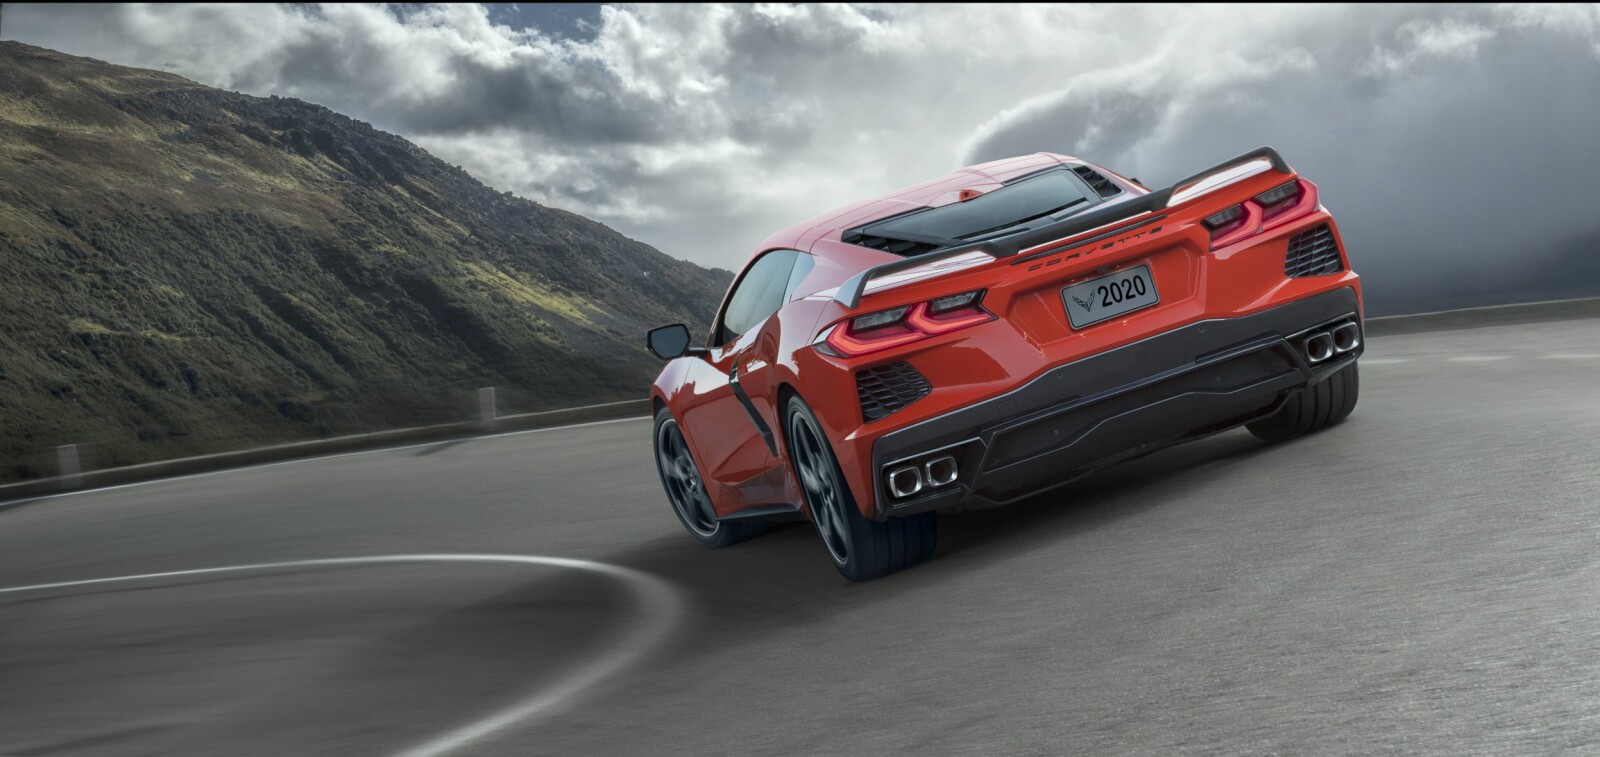 <b>ENDRINGER:</b> Etter 66 år gjør Chevrolet radikale endringer med Corvette